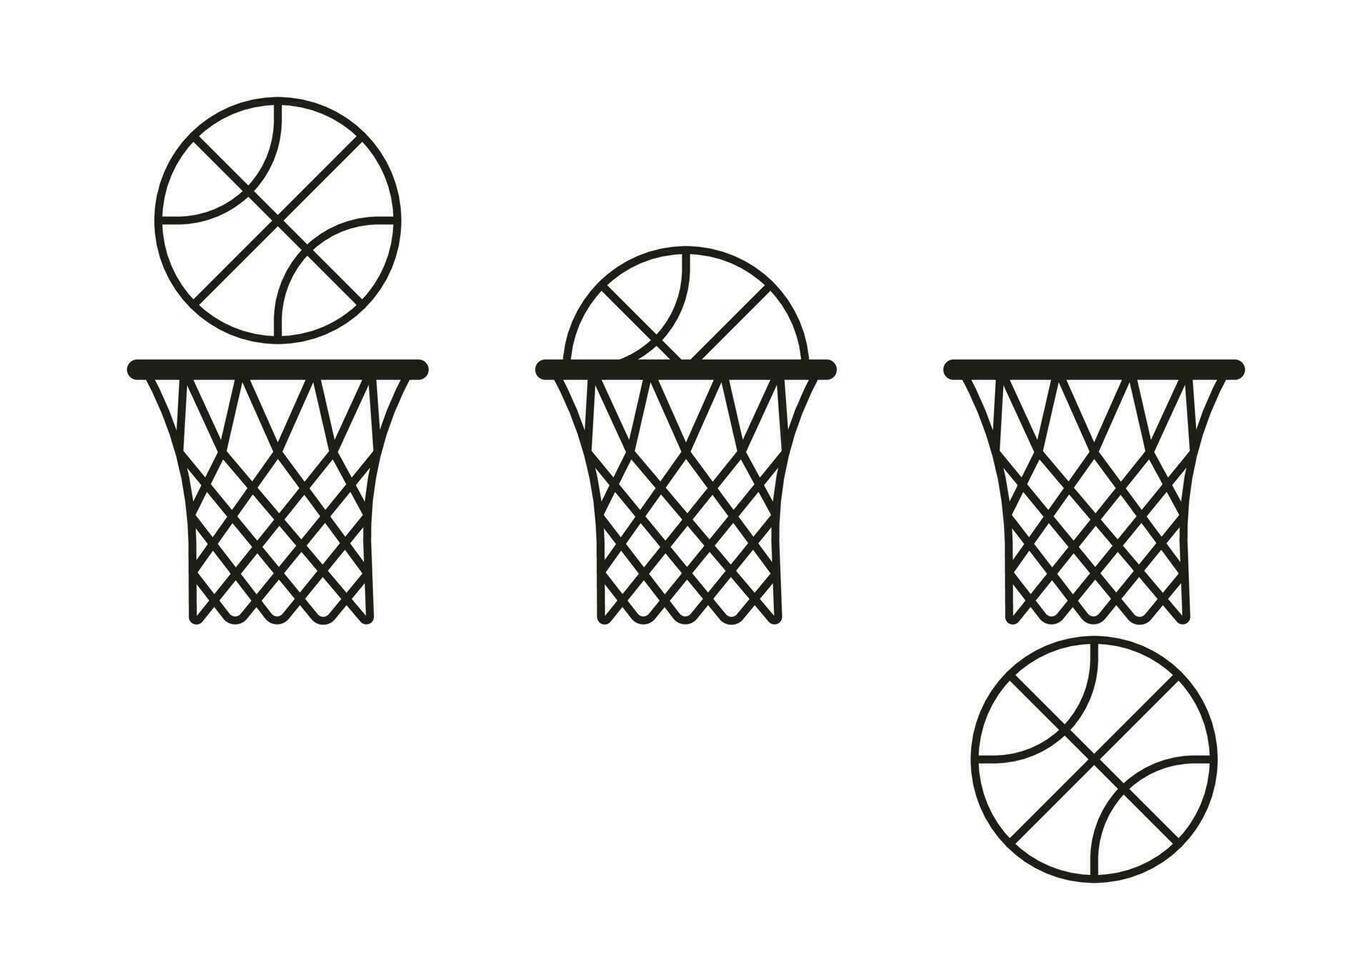 baloncesto pelota golpes aro con red icono. preciso golpear, lanzar a objetivo. Deportes juego con meta. golpear pelota en anillo, éxito. vector ilustración